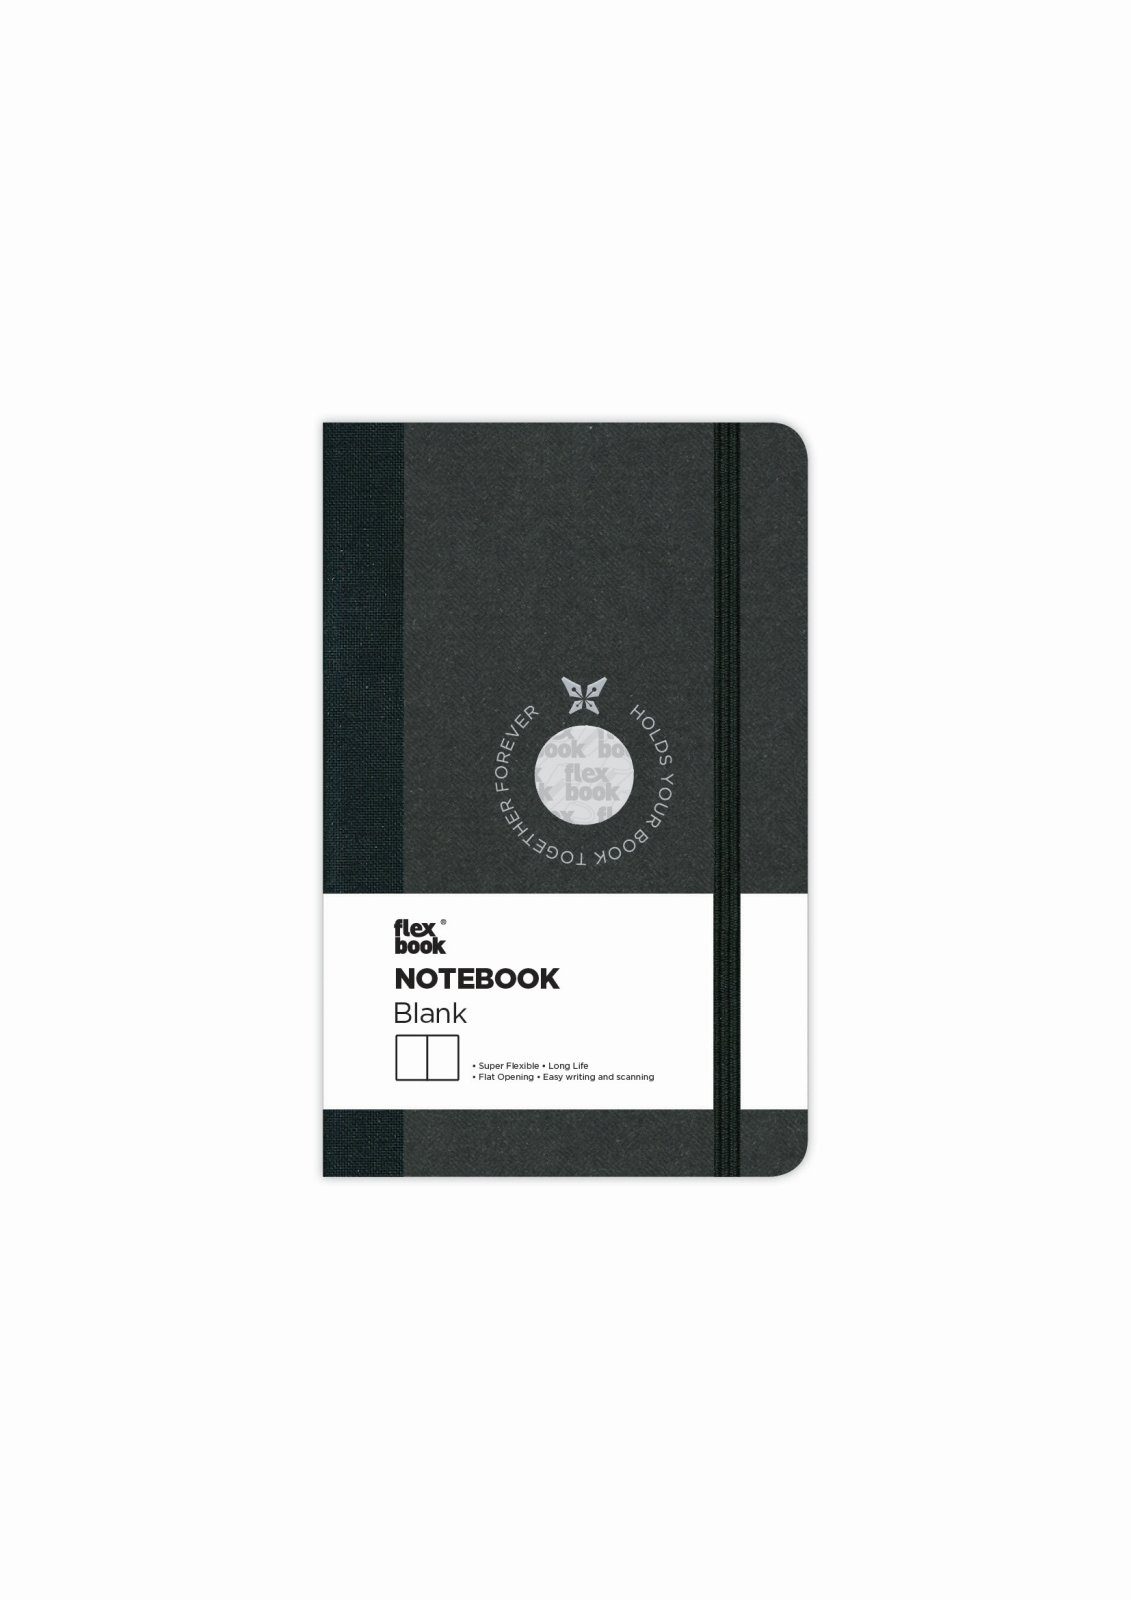 Flexbook Notizbuch Flexbook Globel Notizbuch blanko/linierte Seiten Elastikband verschied 9 * 14 cm / Blanko / Schwarz